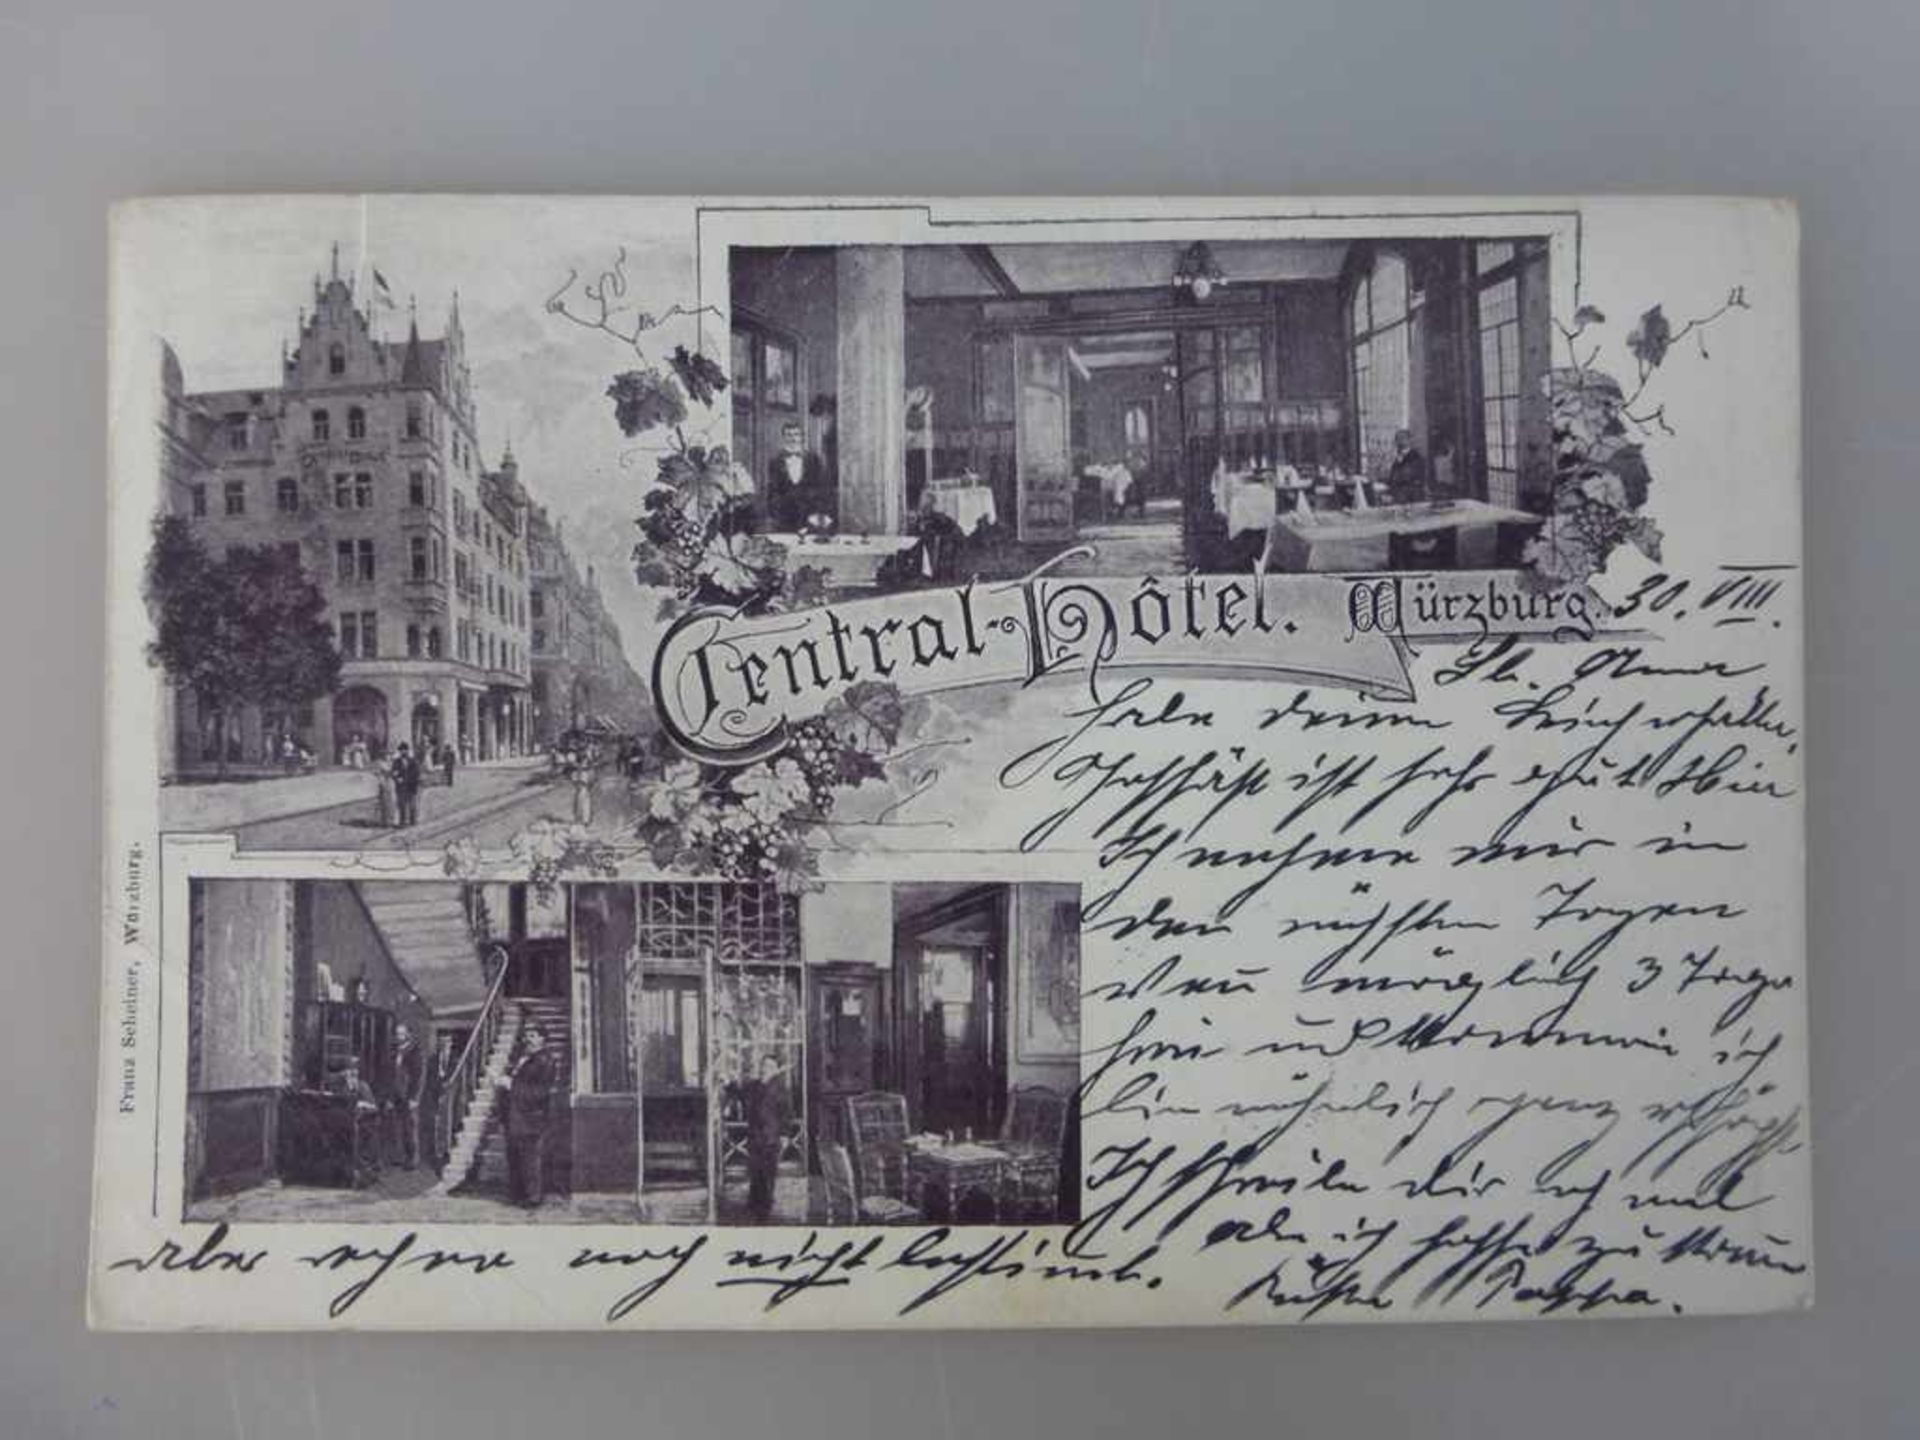 Postkarte, Central Hotel Würzburg, F. Scheiner Verlag, gel. 1899